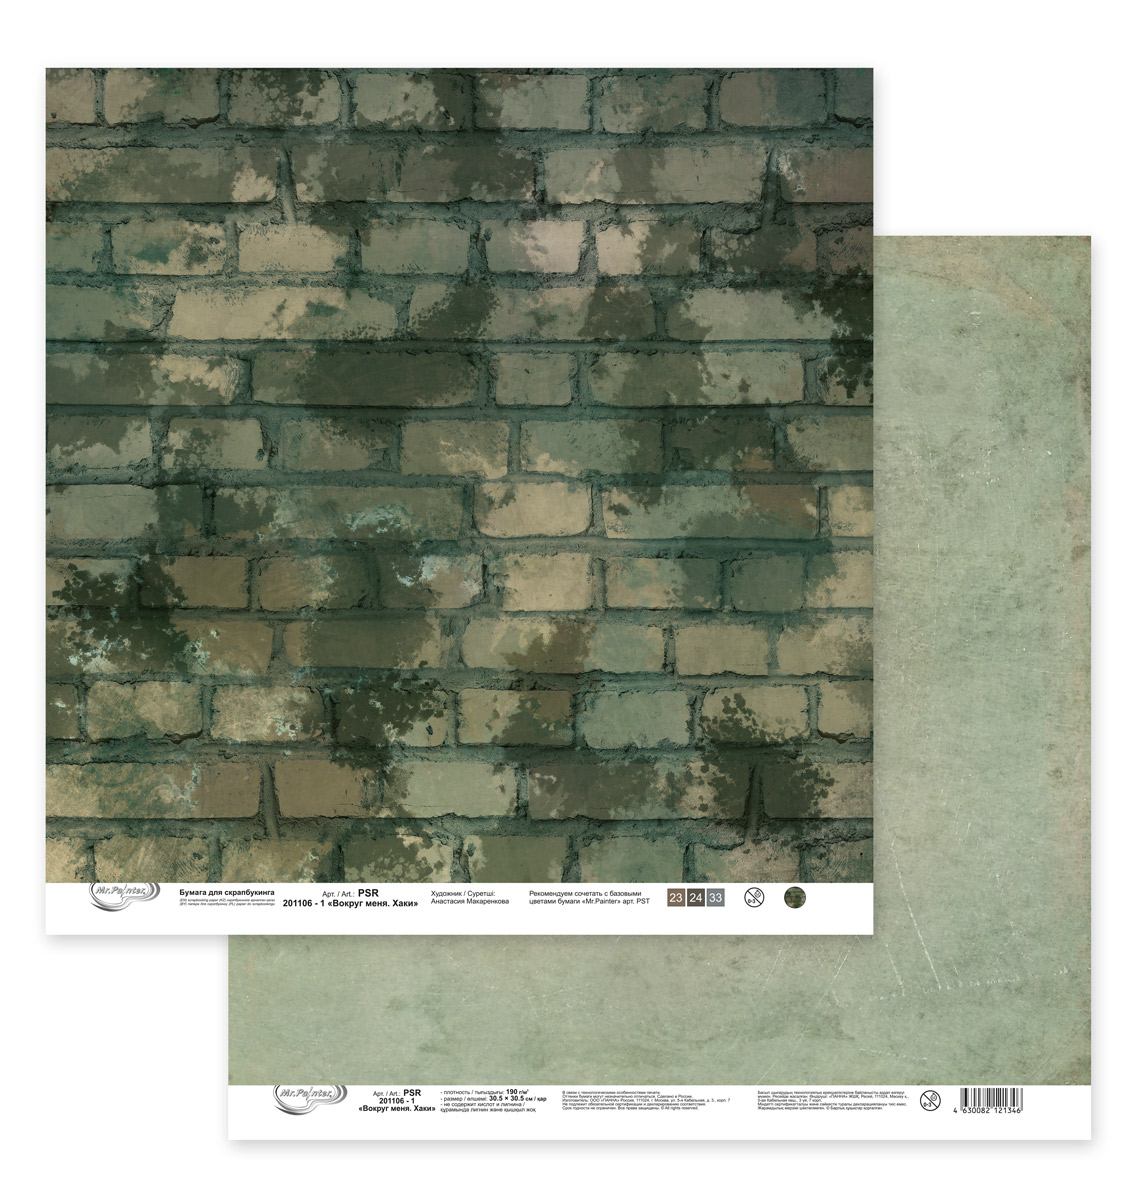 Лист двусторонней бумаги из коллекции  "Вокруг меня. Хаки" от "Mr.Painter", PSR-201106-1, 190 г/кв.м, 30.5 x 30.5 см